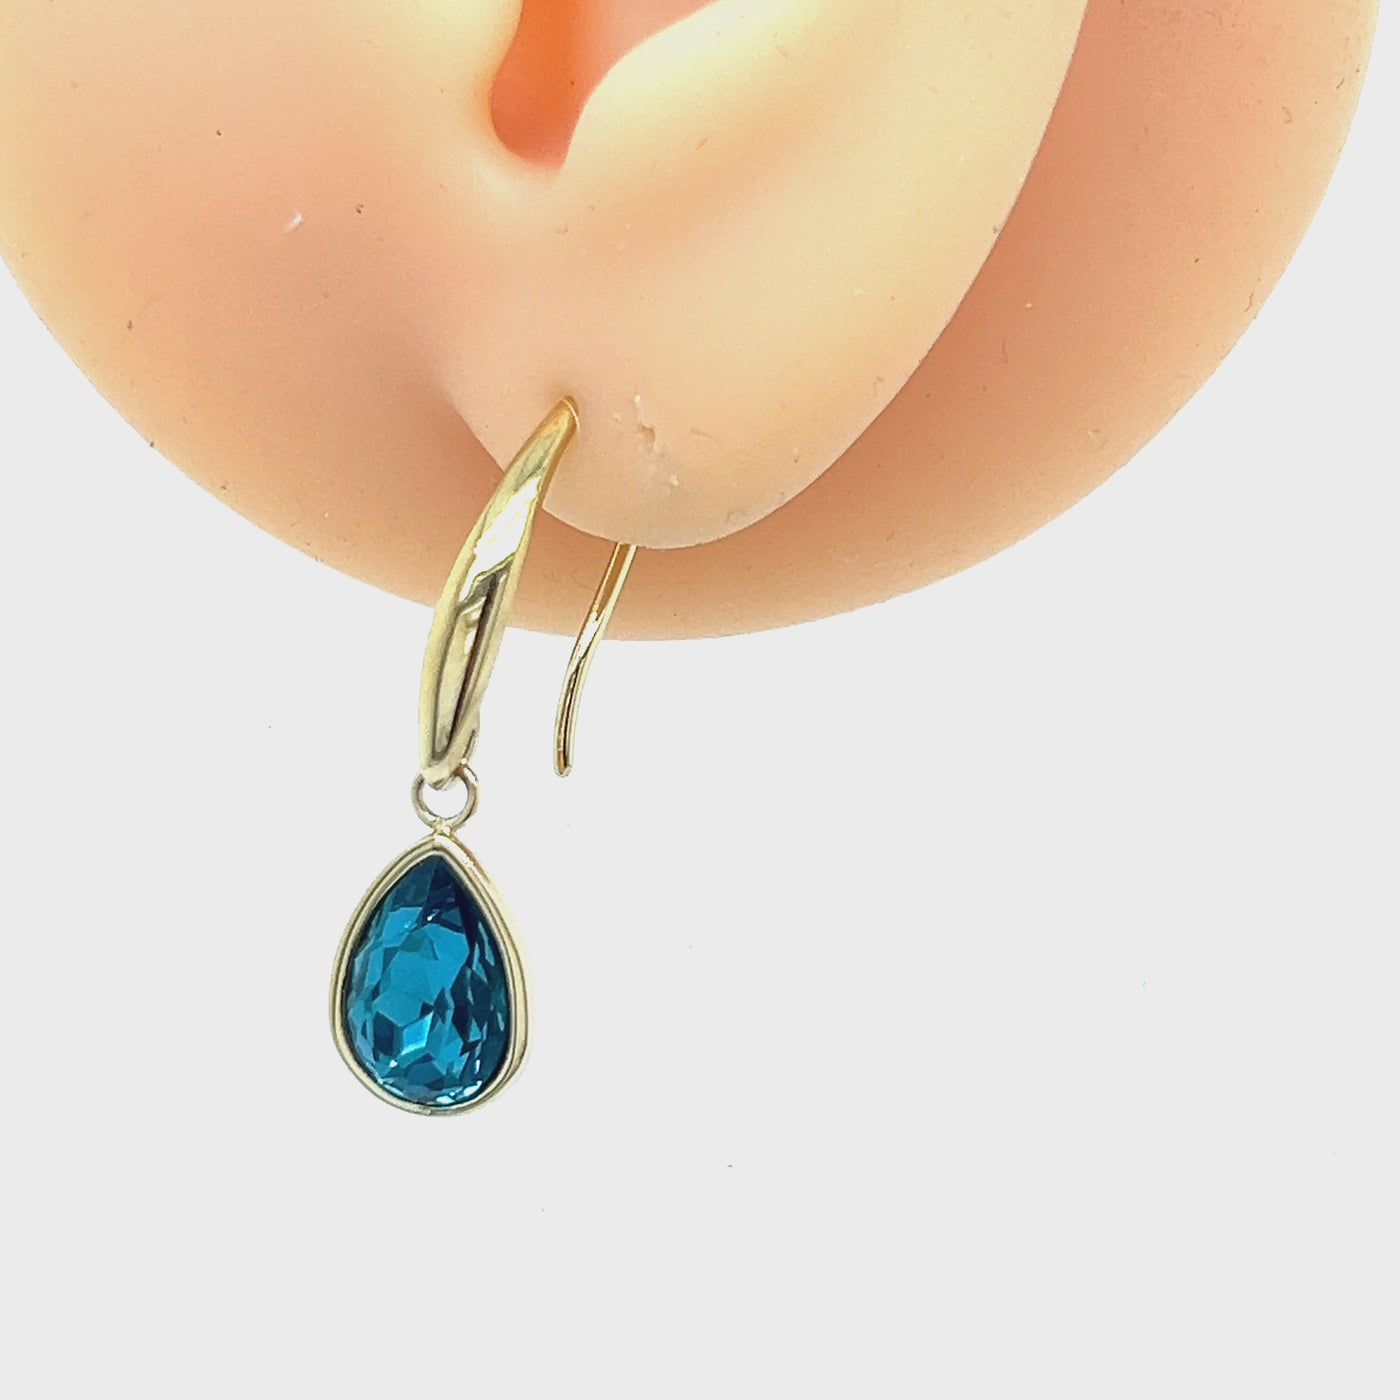 Gold Plate Blue Glass Teardrop Earrings